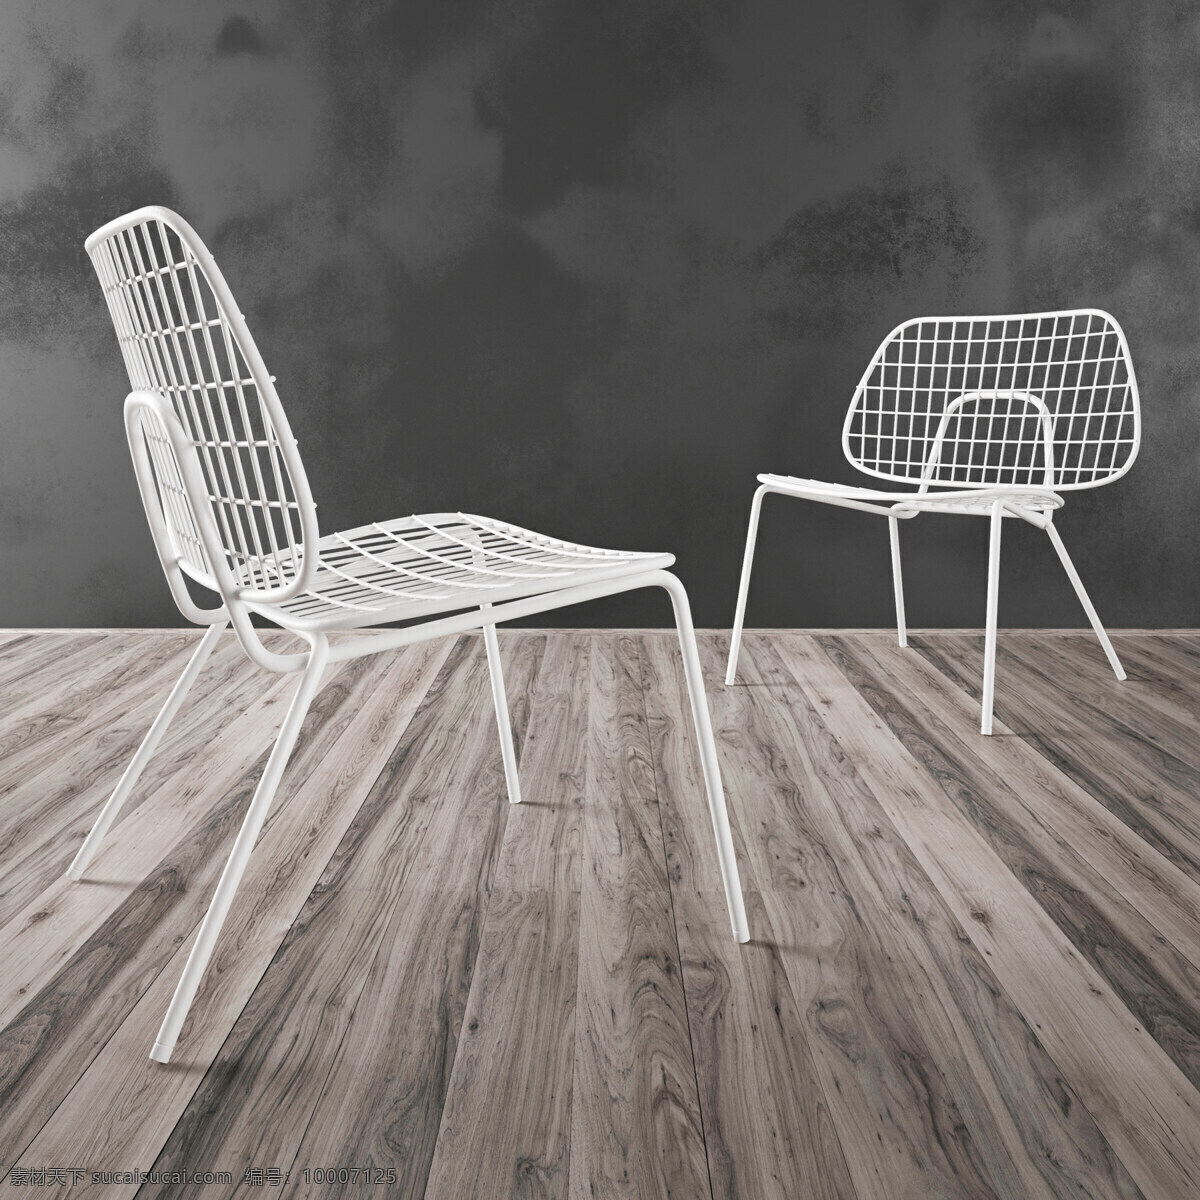 白色 镂空 椅子 模型 3d渲染 模型下载 地板